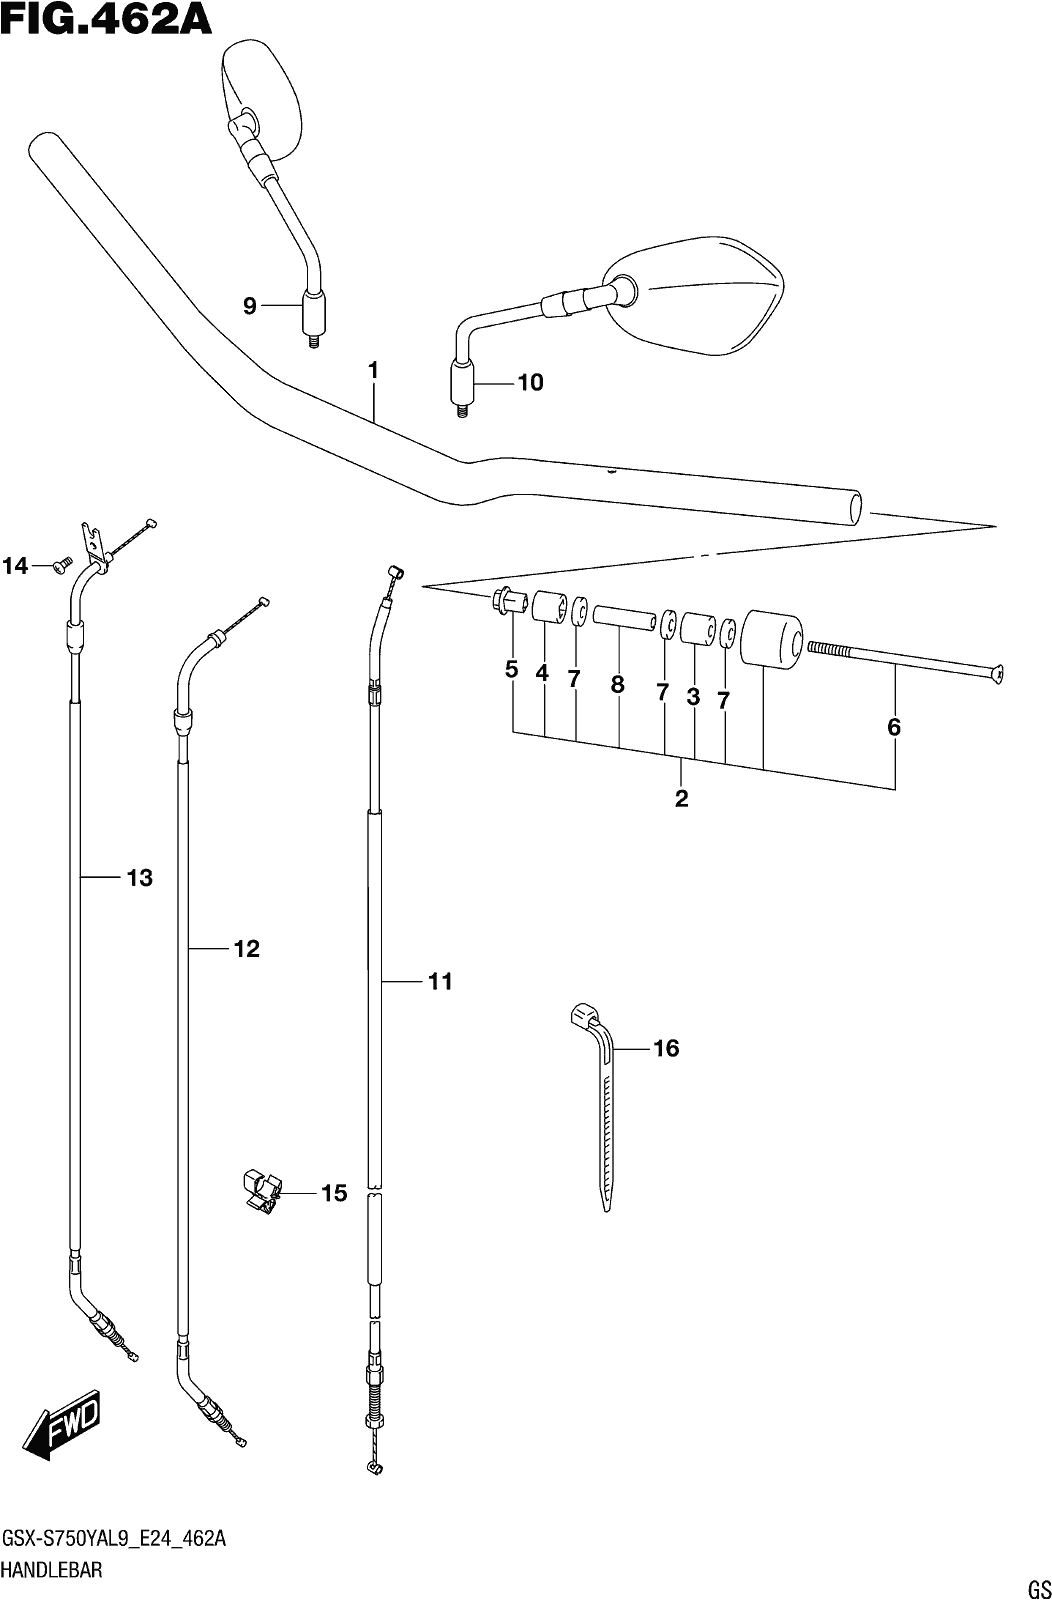 Fig.462a Handlebar